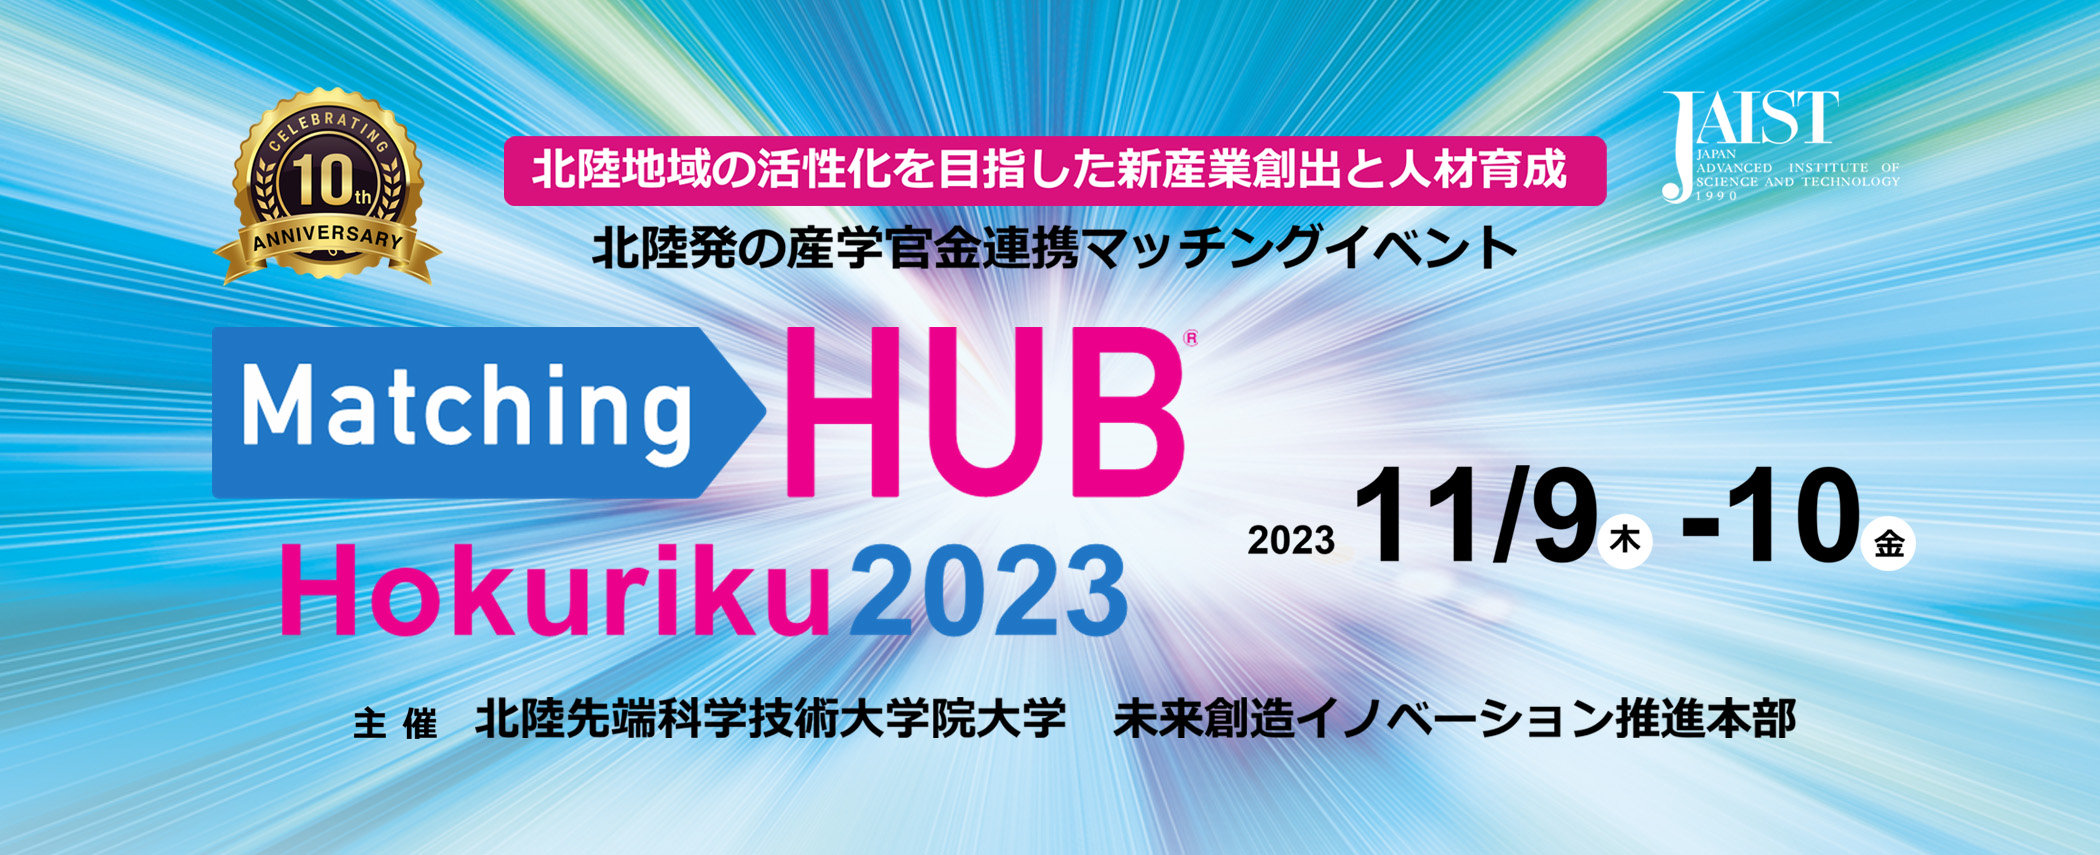 Matching HUB Hokuriku 2023